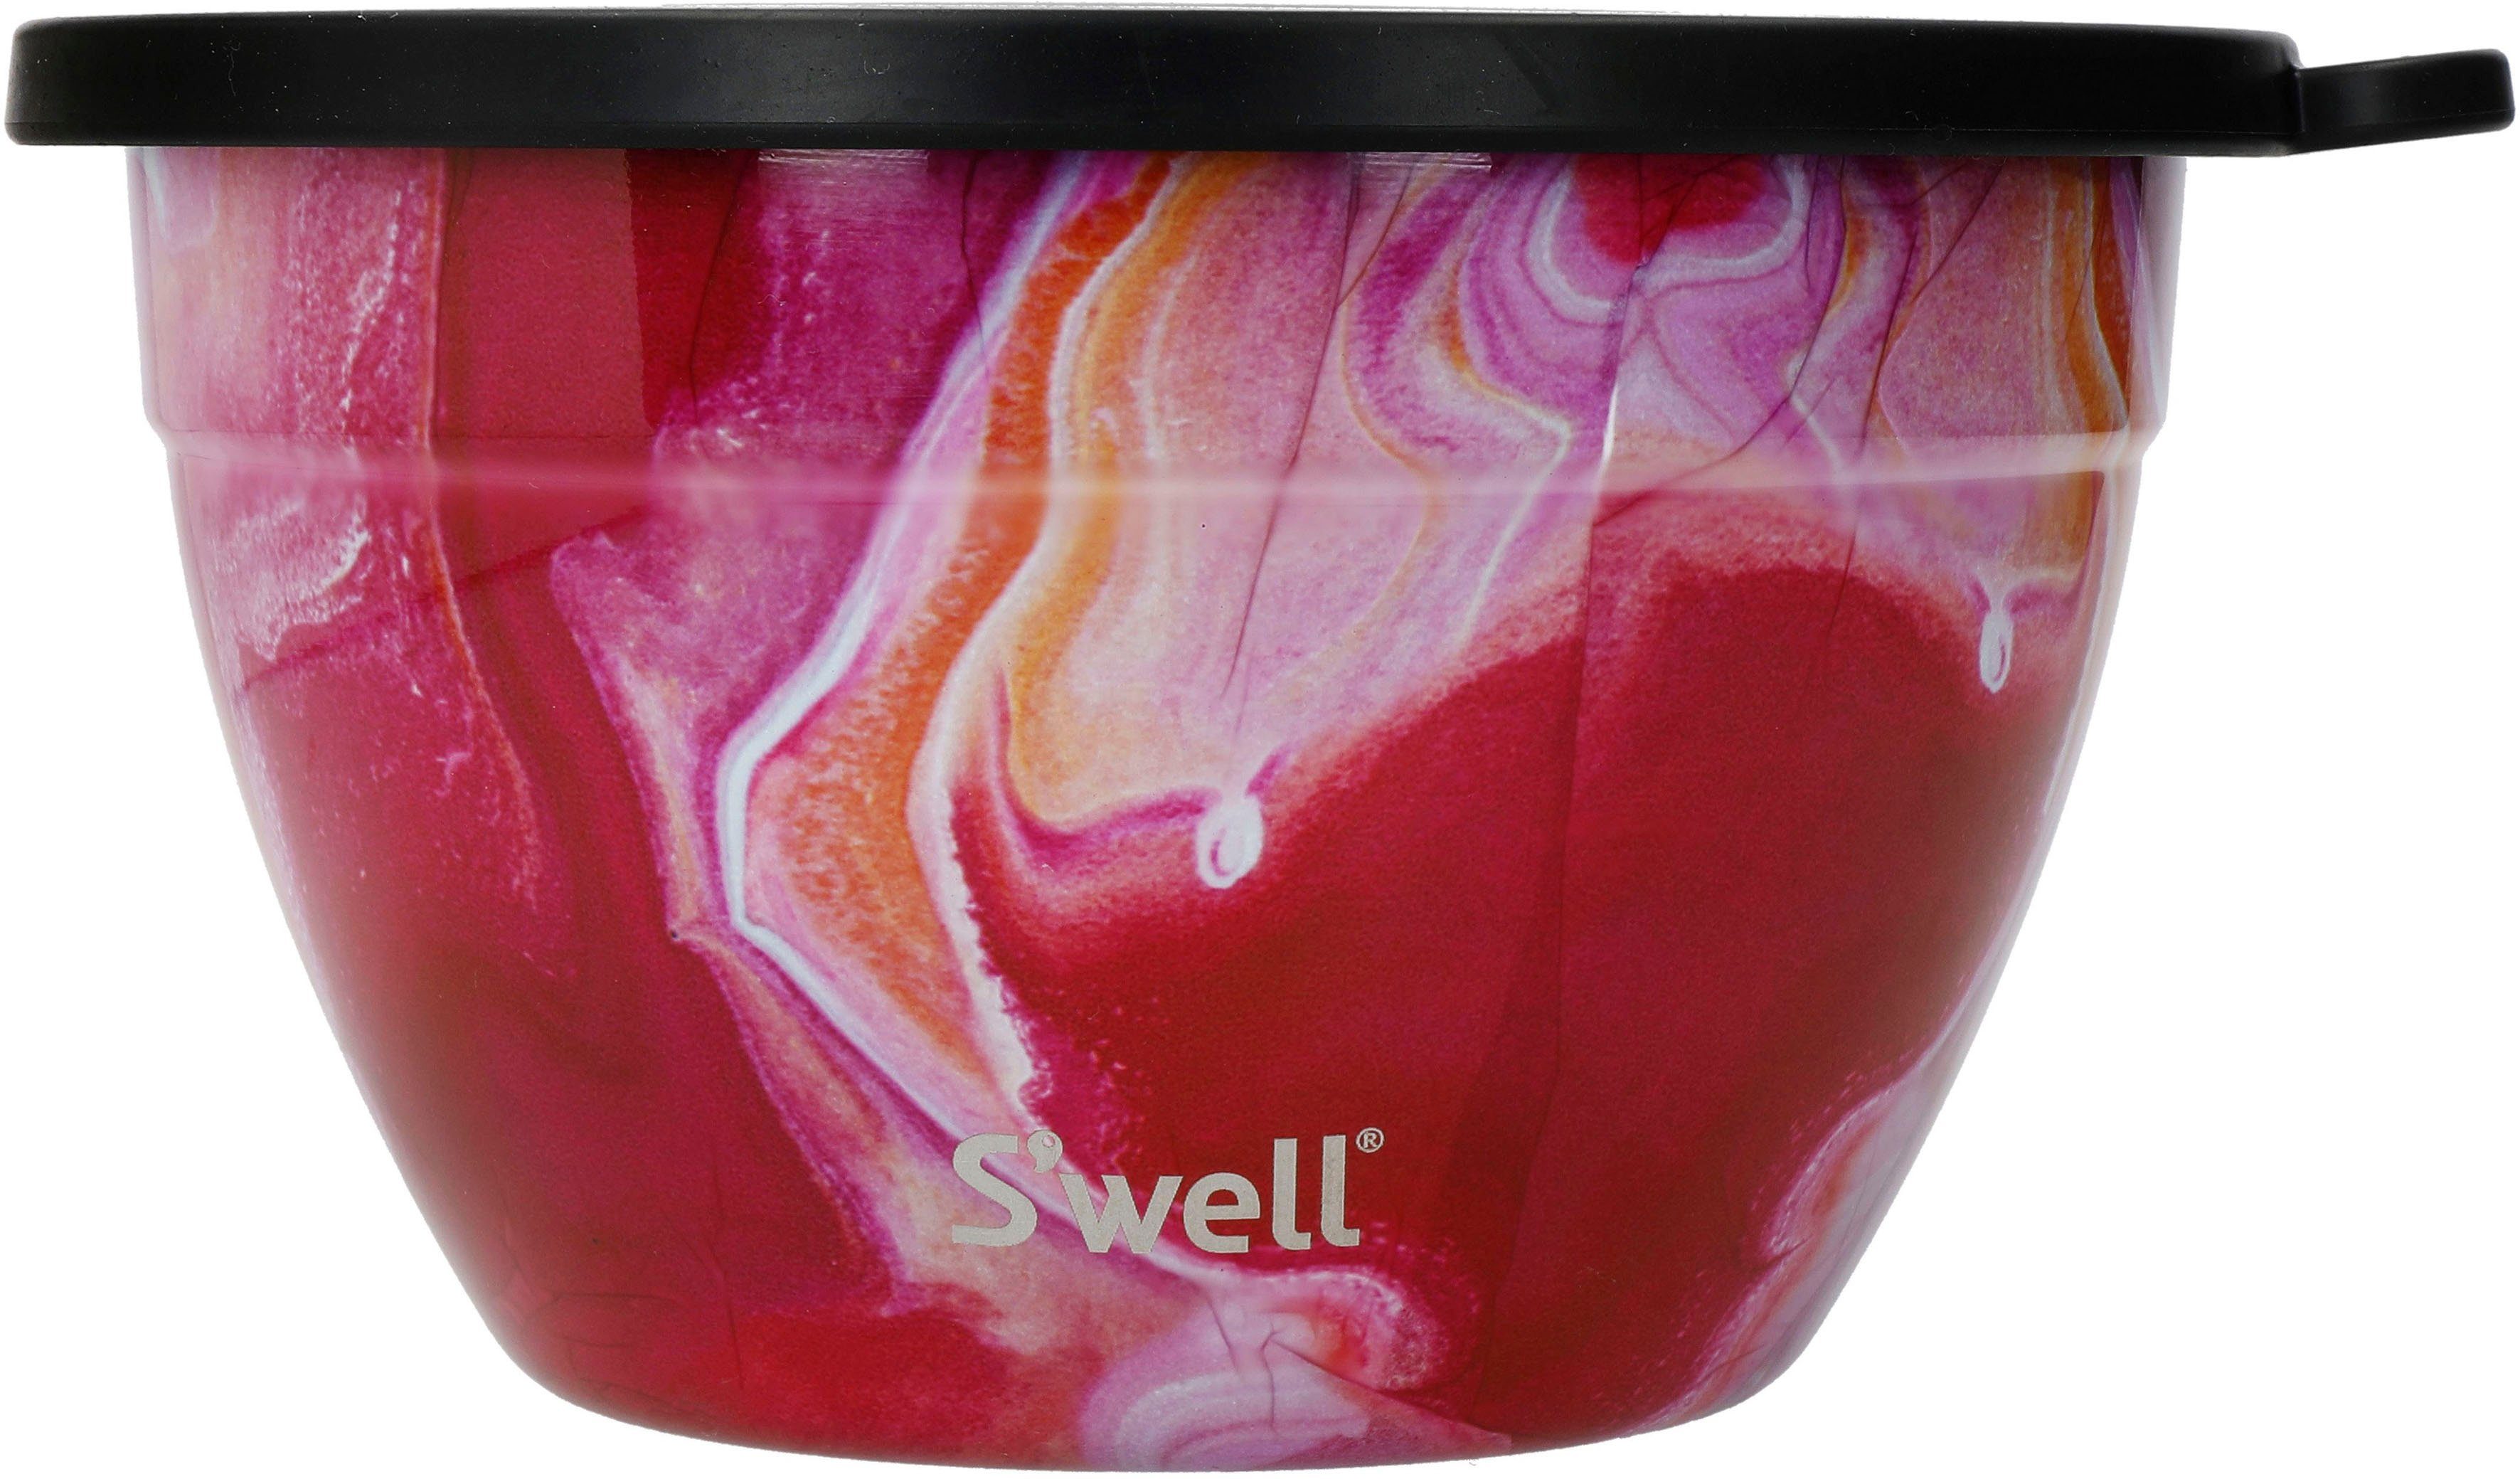 S'well Salatschüssel S'well Bowl Agate Therma-S'well®-Technologie Salad Außenschale vakuumisolierten Rose mit (3-tlg), Kit, Calacatta Edelstahl, Gold 1.9L